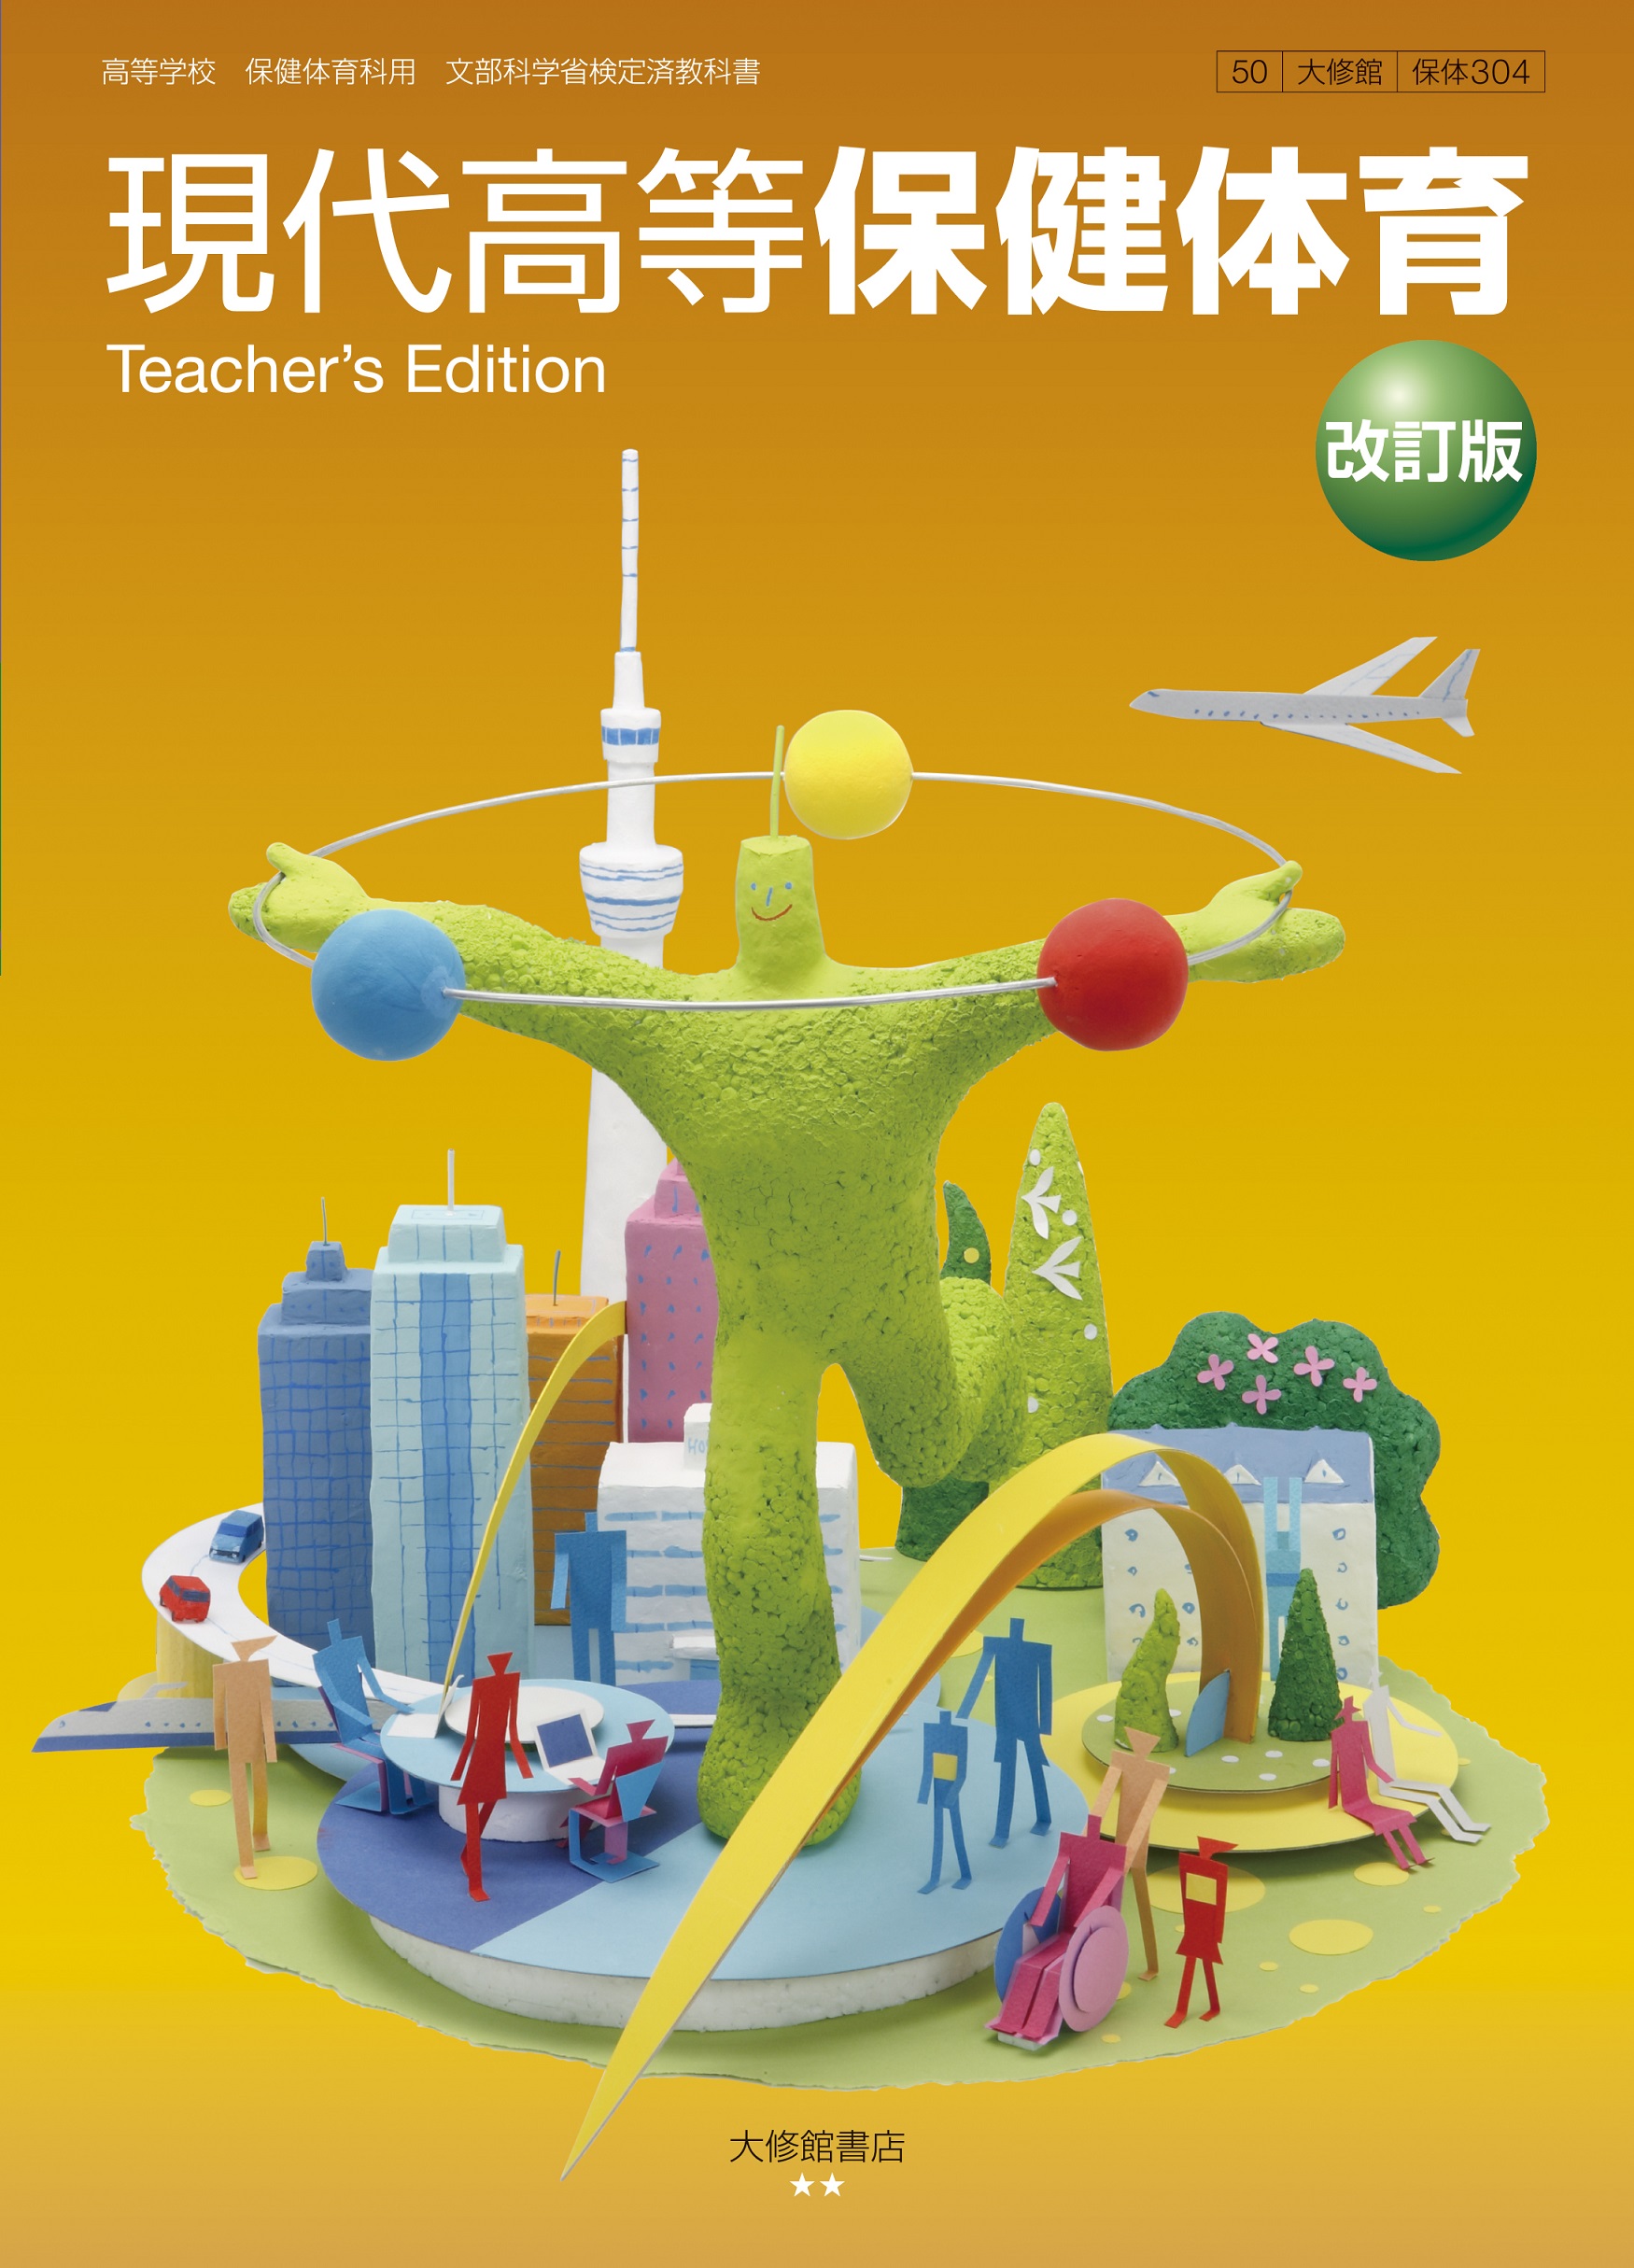 現代高等保健体育改訂版Teacher's Edition（朱注編） 教師用指導書一覧